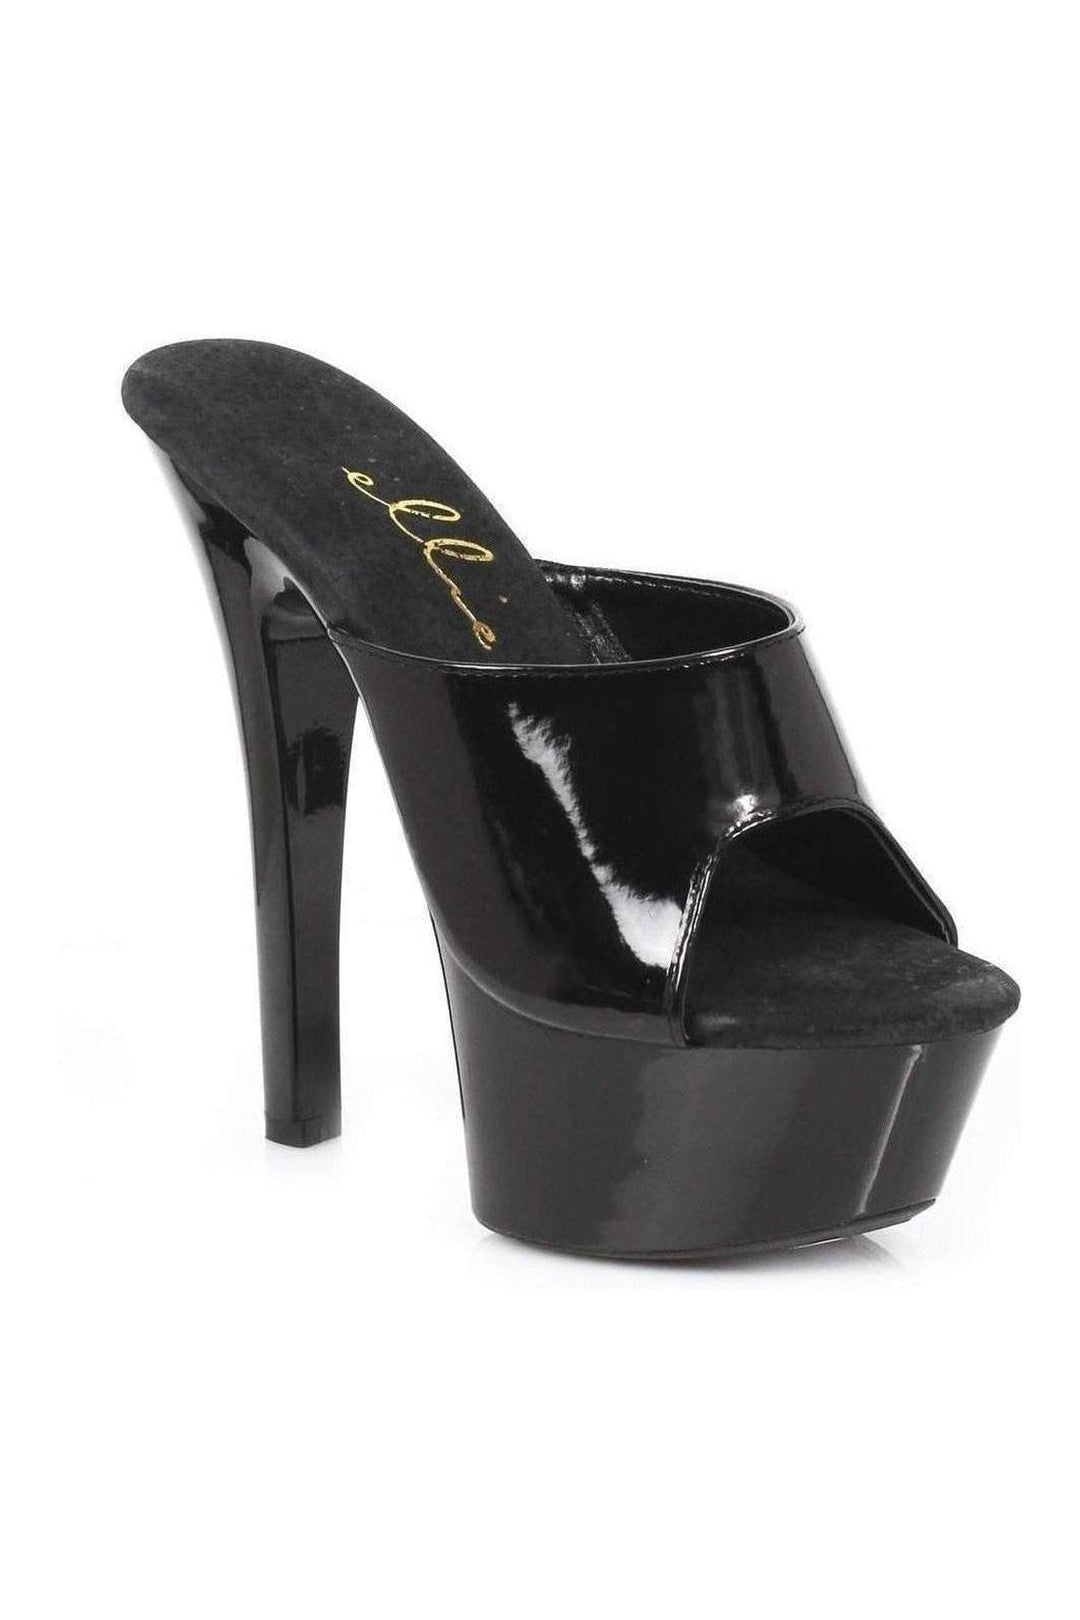 601-VANITY Platform Slide | Black Patent-Ellie Shoes-Black-Slides-SEXYSHOES.COM